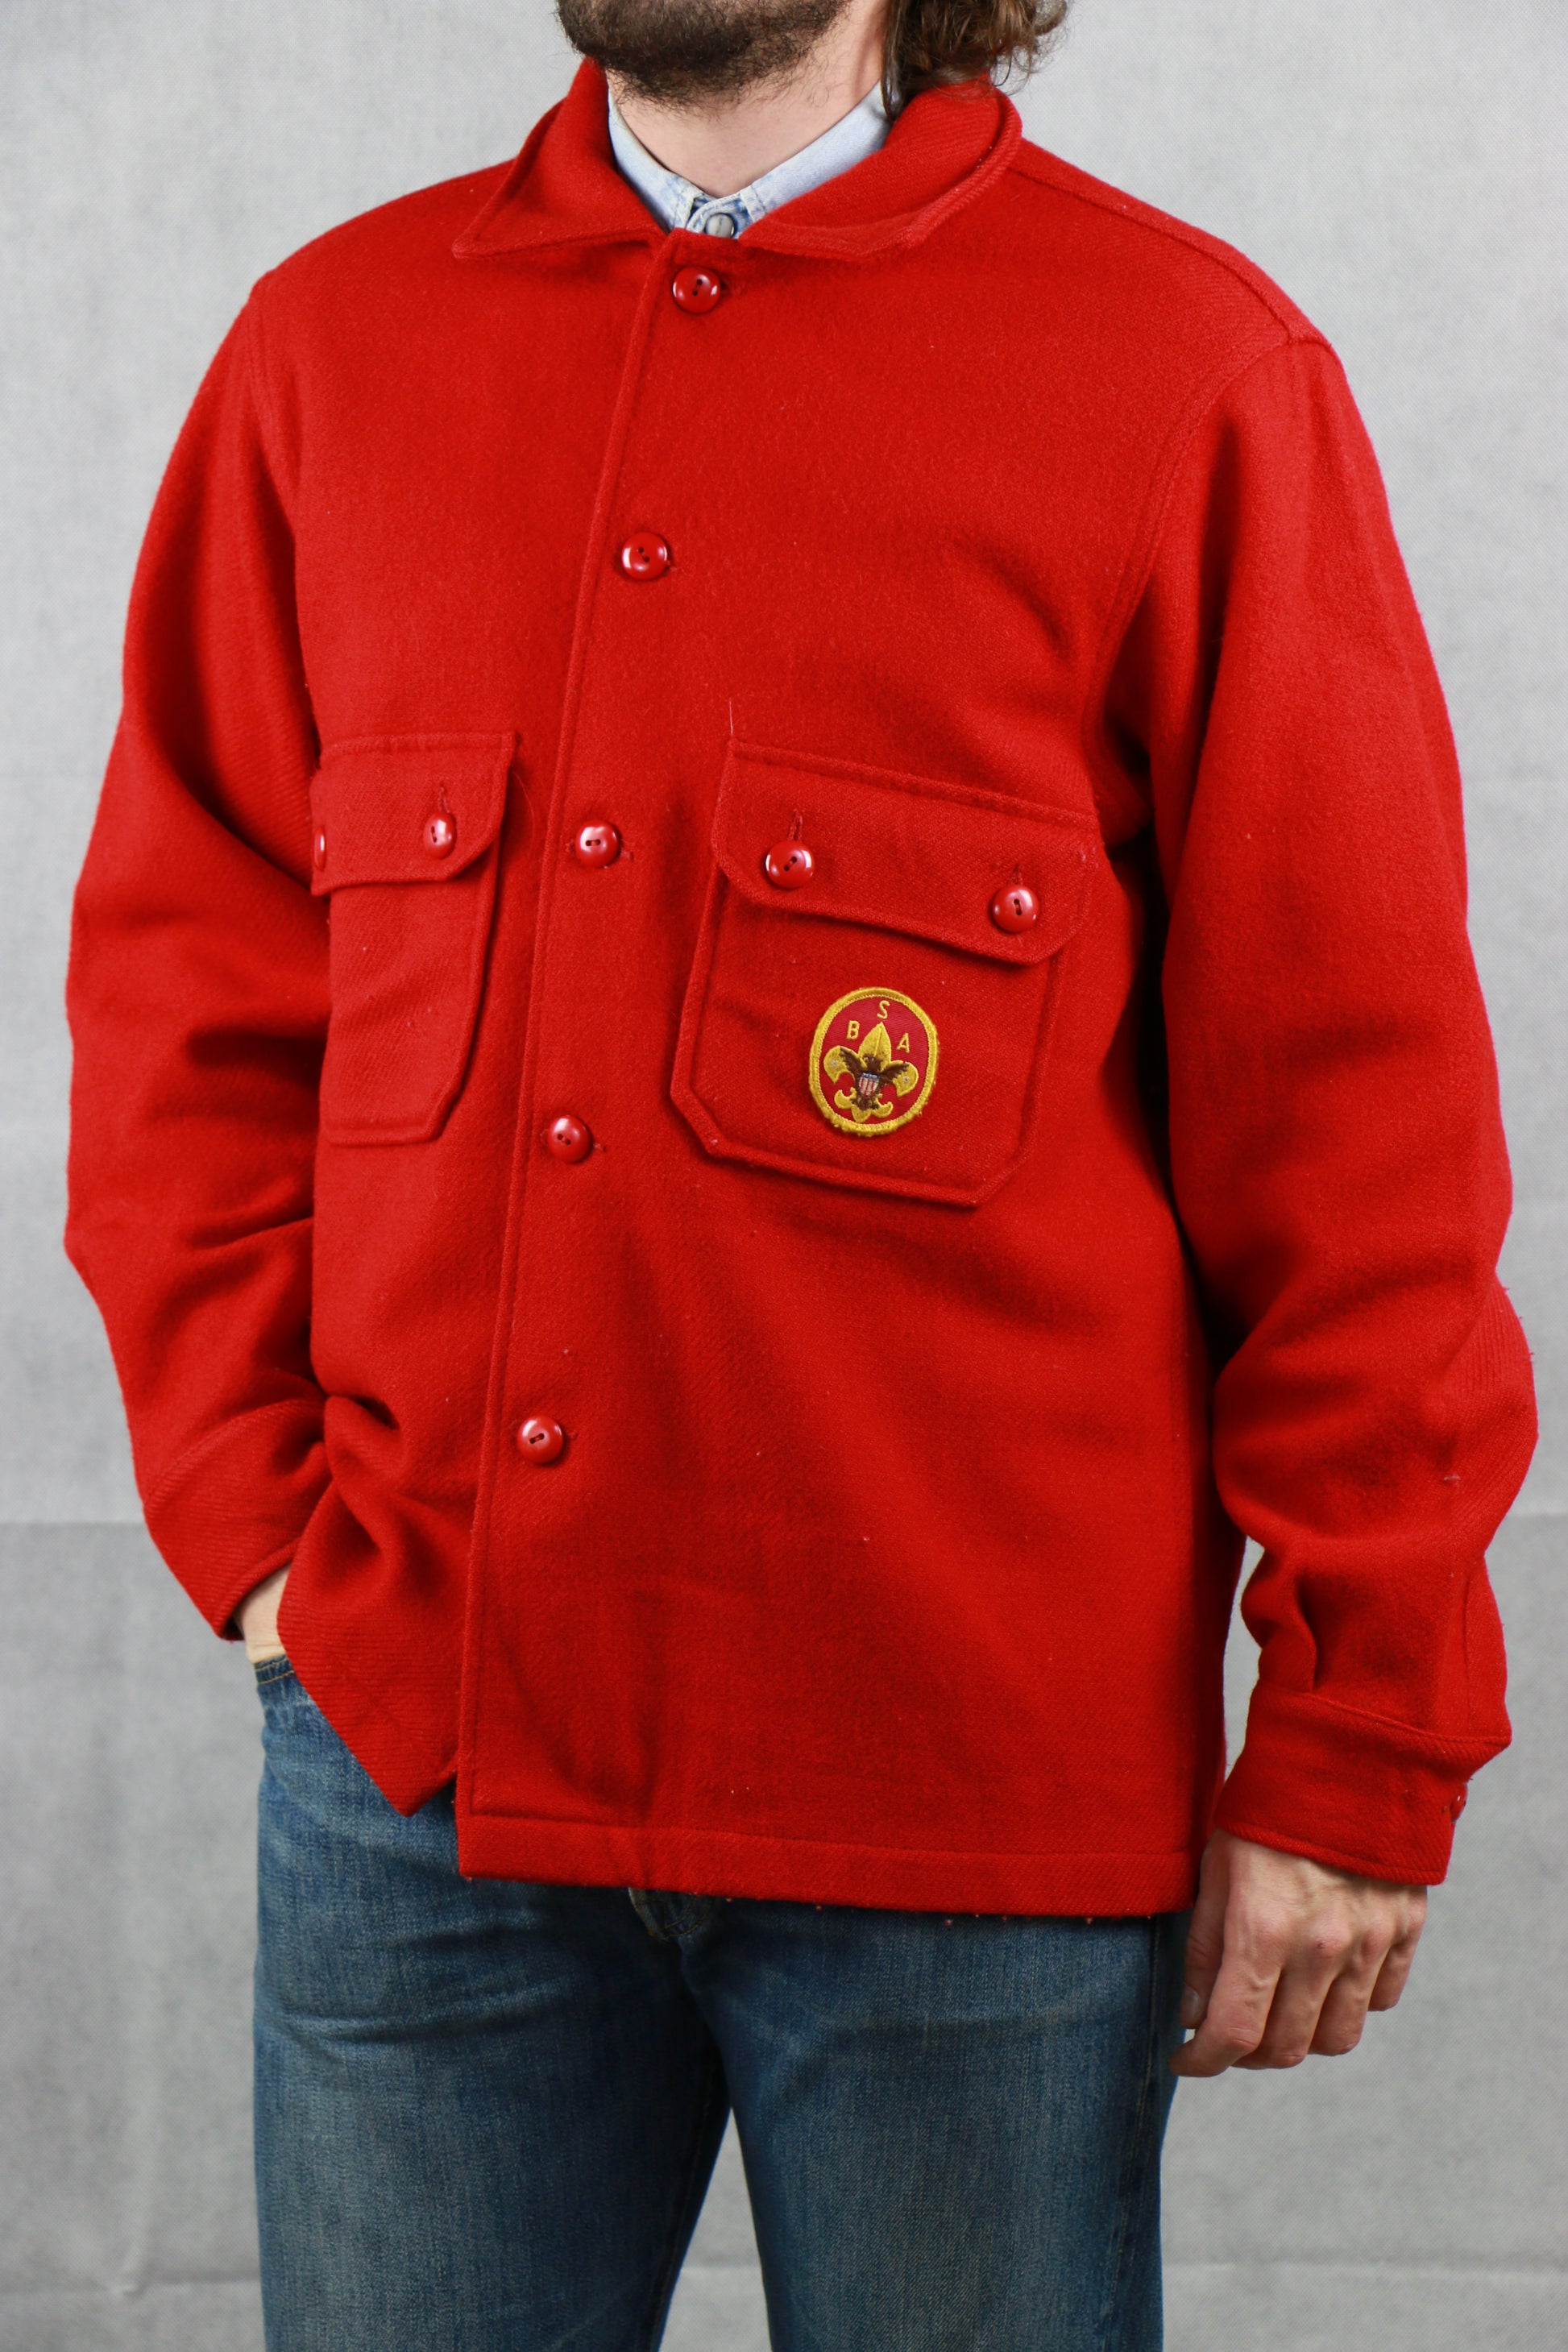 Boy Scout Official Shirt, clochard92.com